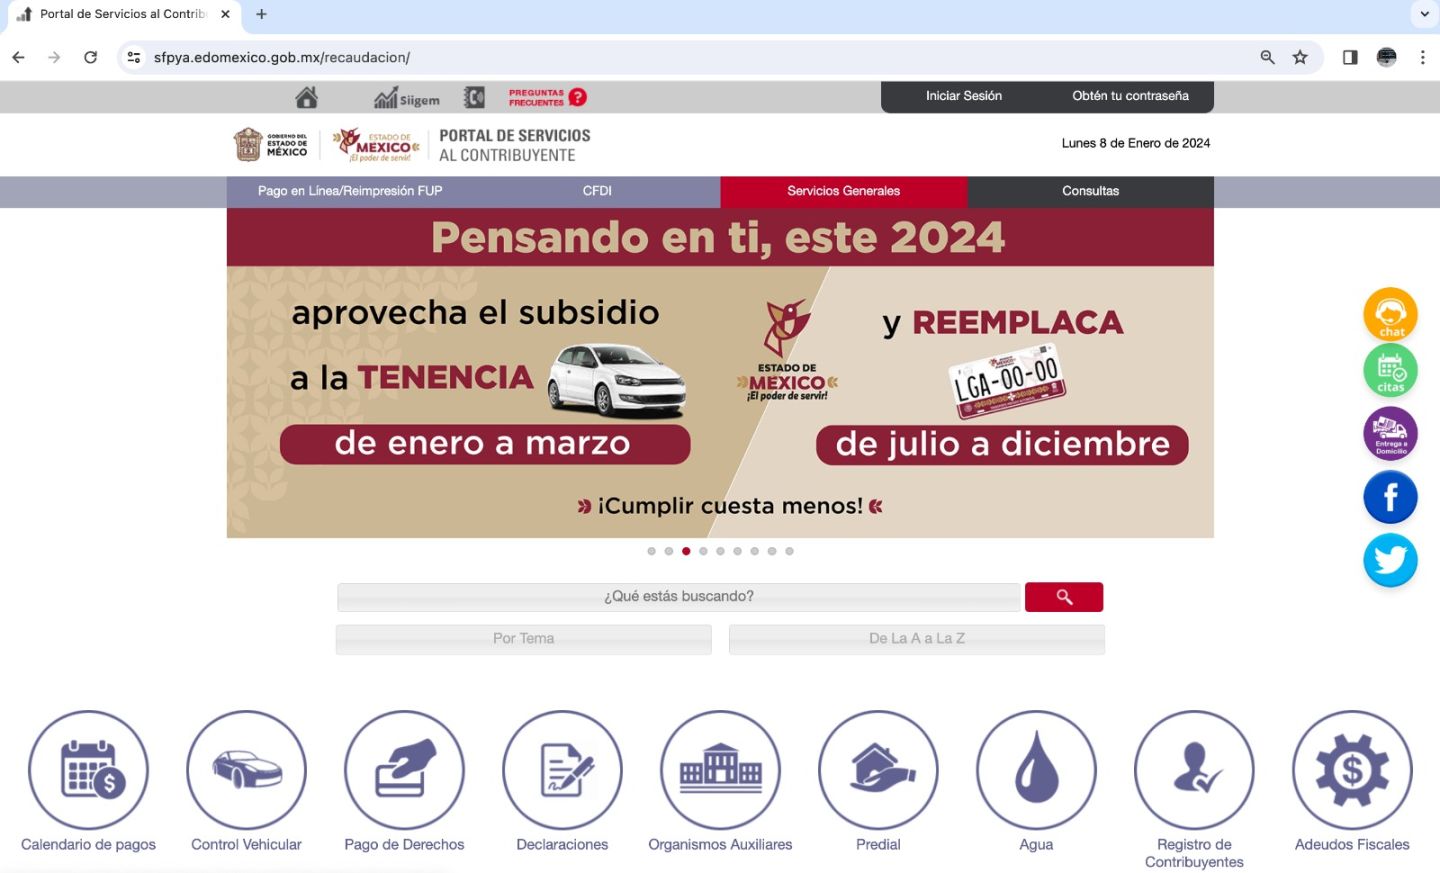 Opera con normalidad portal de servicios al contribuyente del estado de México 